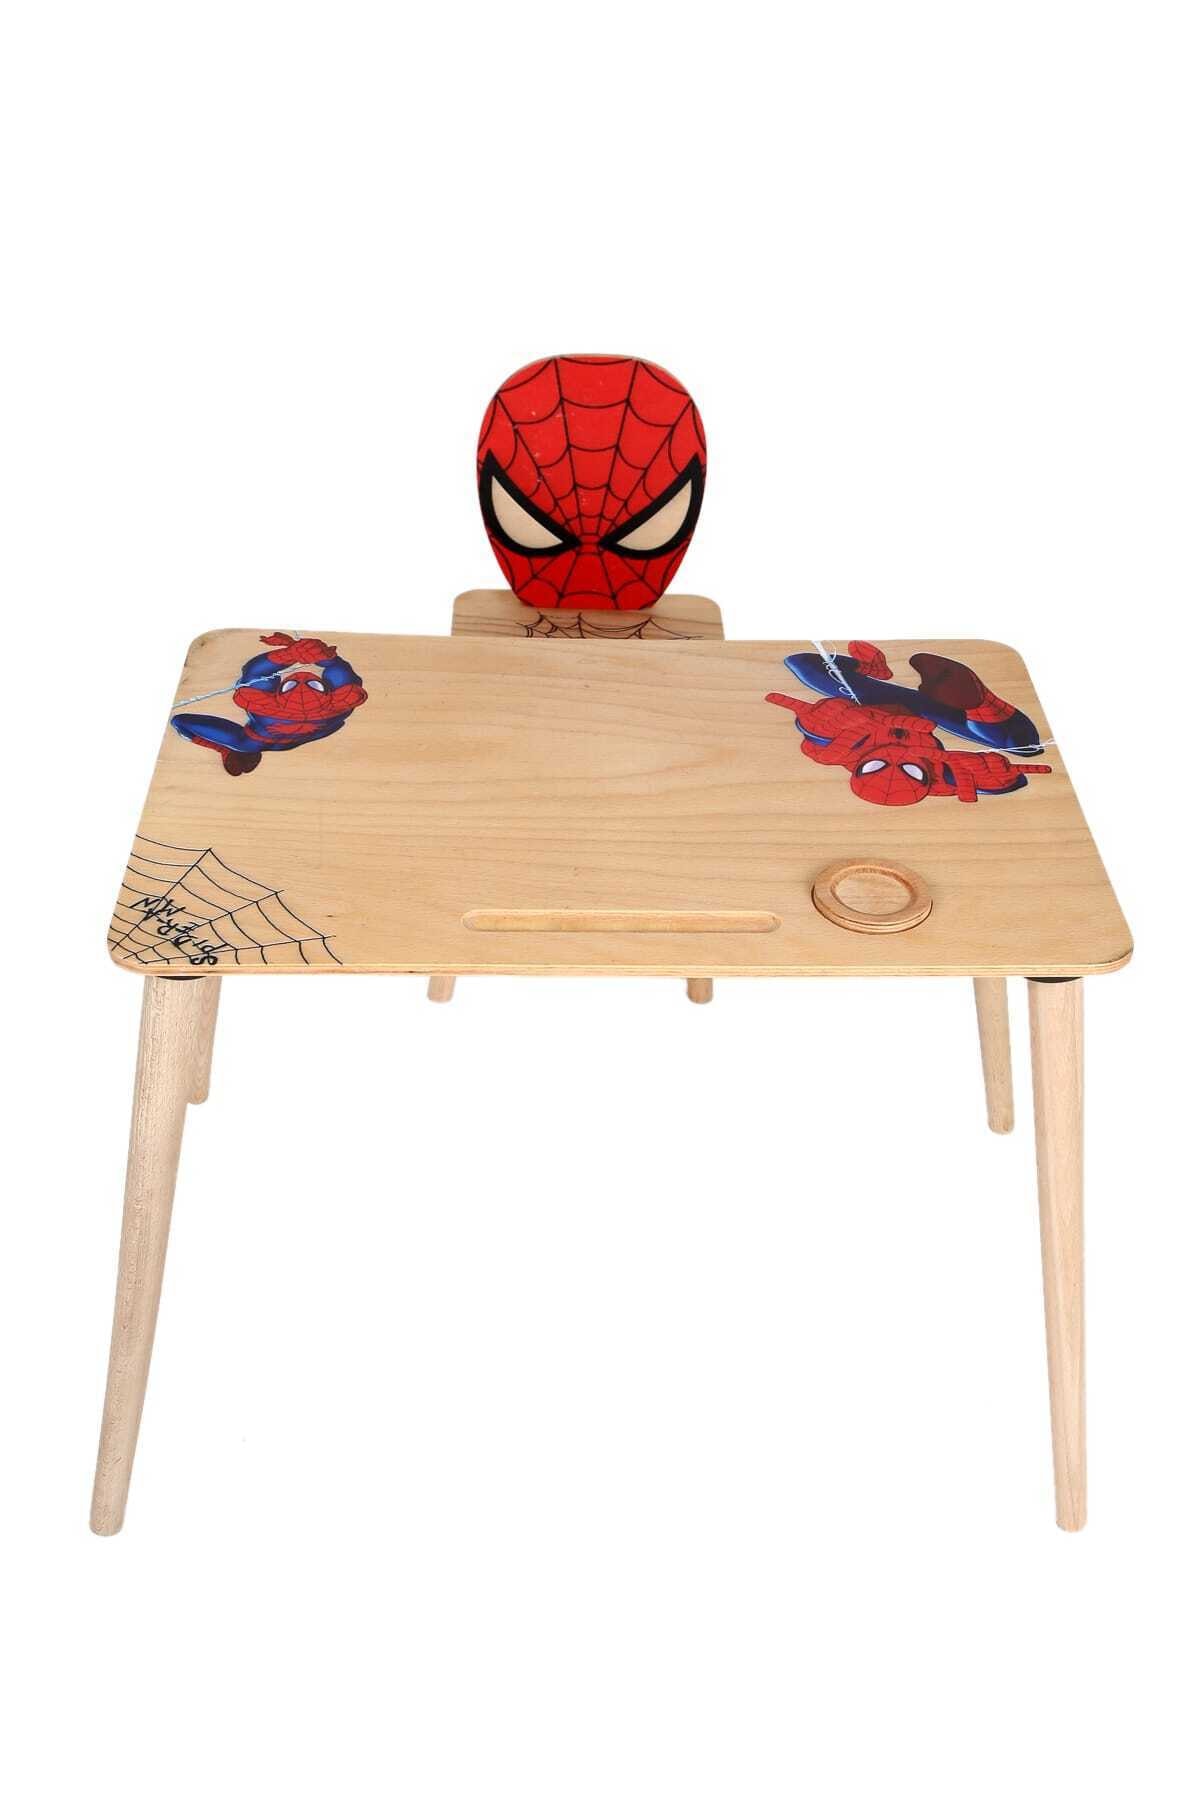 ART AHŞAP Ahşap Örümcek Adam Çocuk Masa Sandalye Takımı Aktivite Eğlence Masası